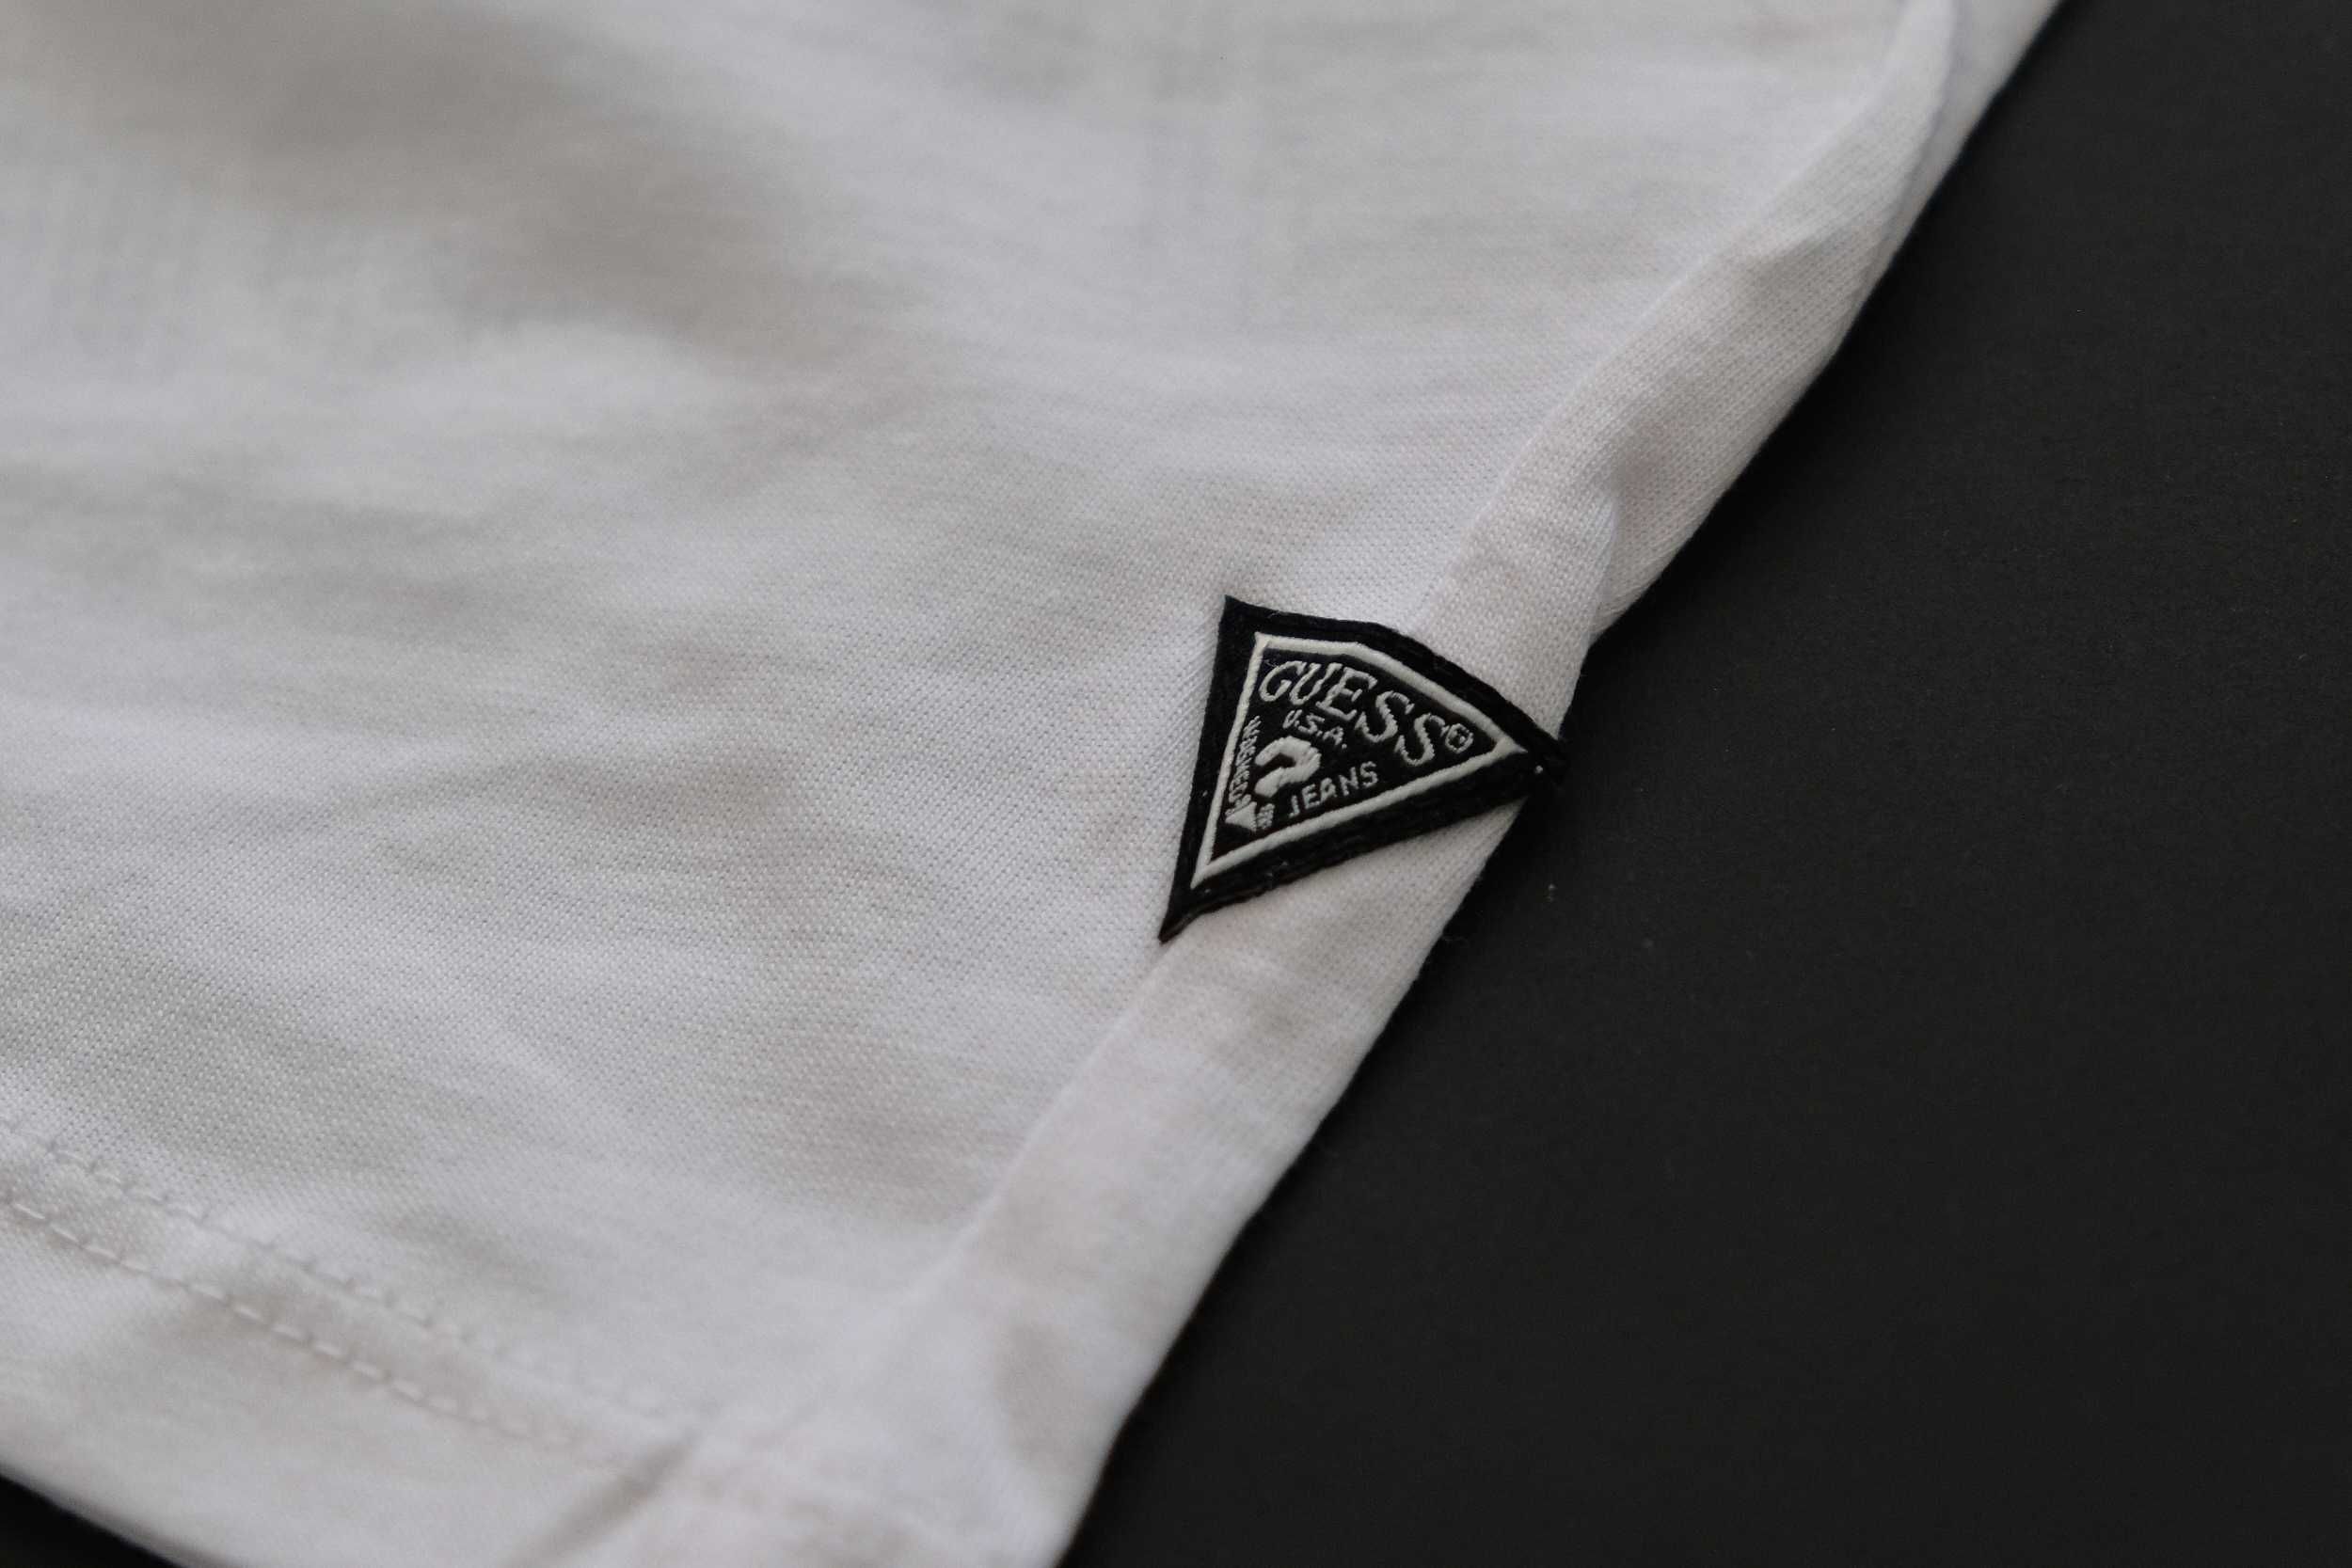 ПРОМО GUESS XL размери-Оригинална бяла мъжка тениска с баркод